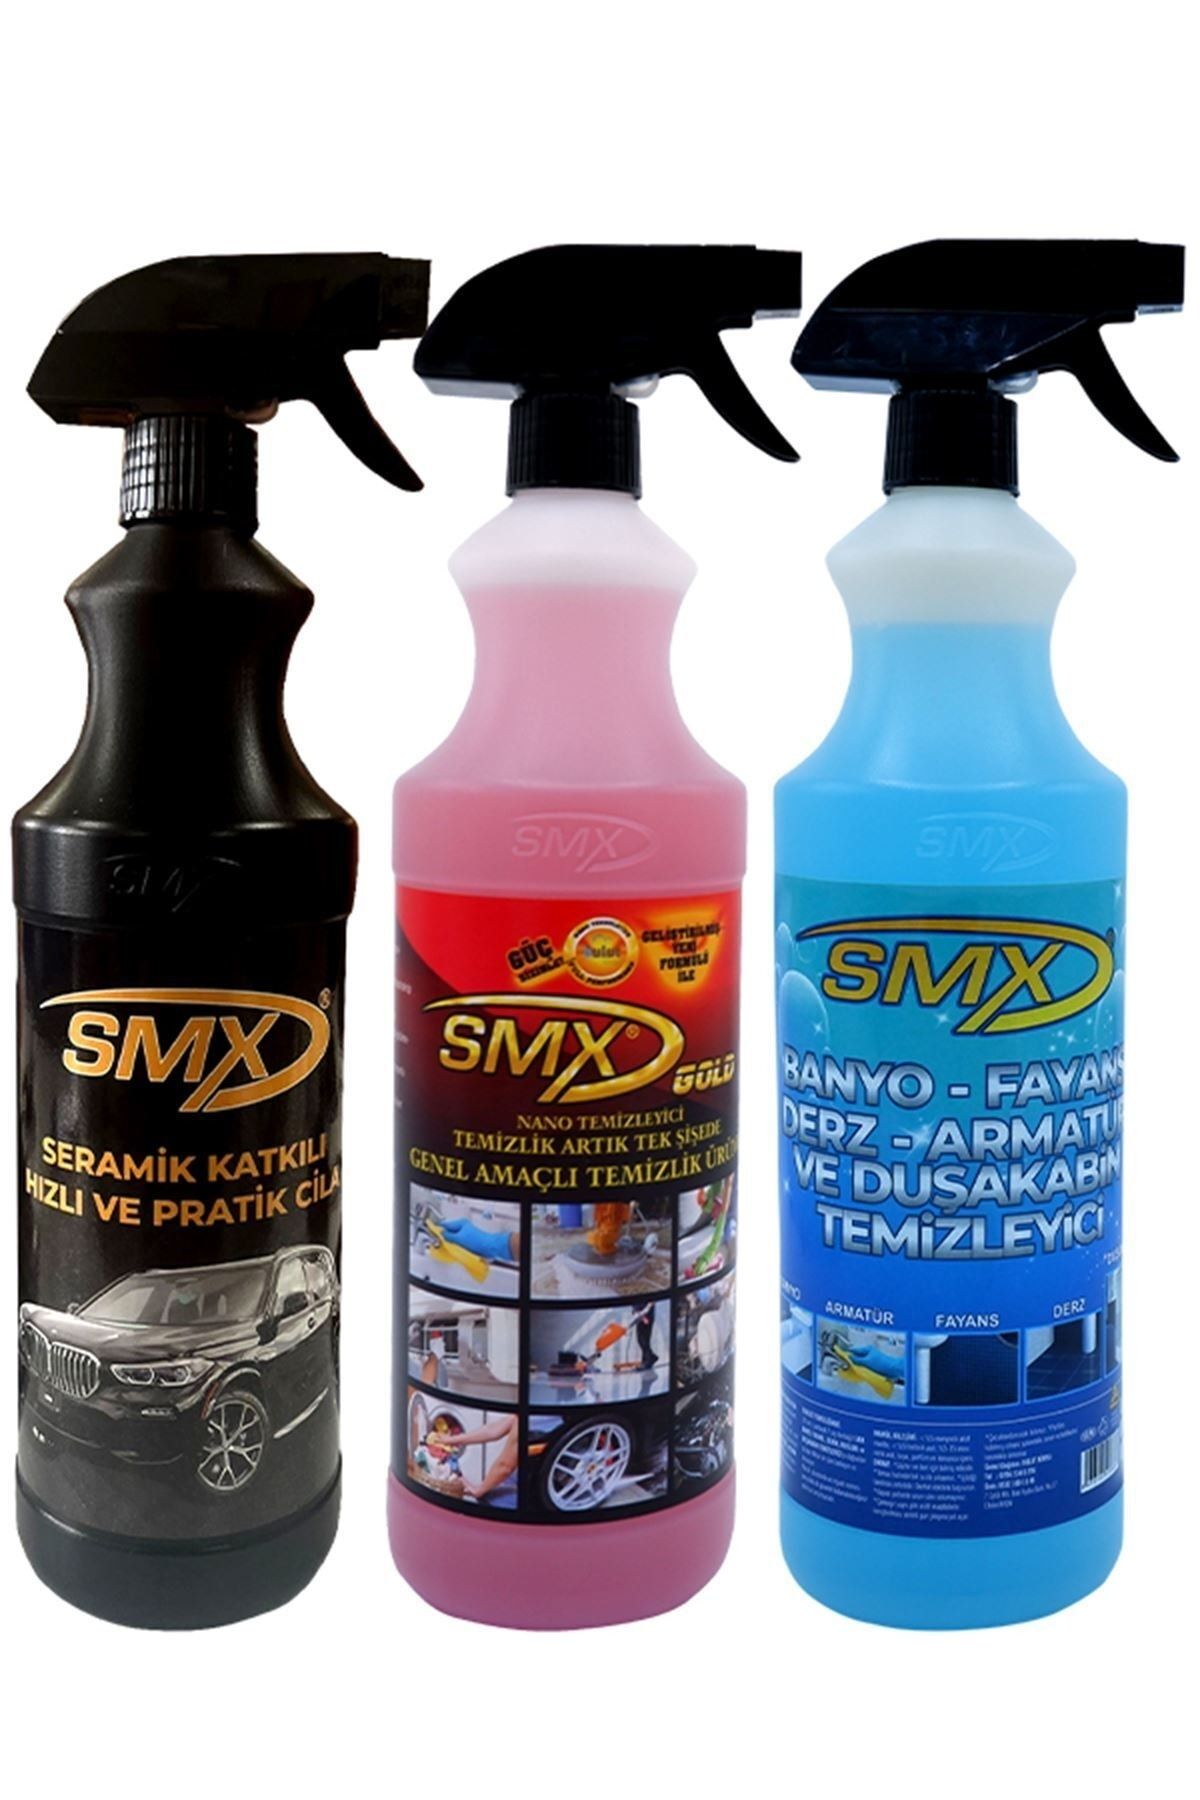 SMX Seramik Katkılı Cila-genel Amaçlı Temizleyici-banyo Fayans Derz Temizleyici